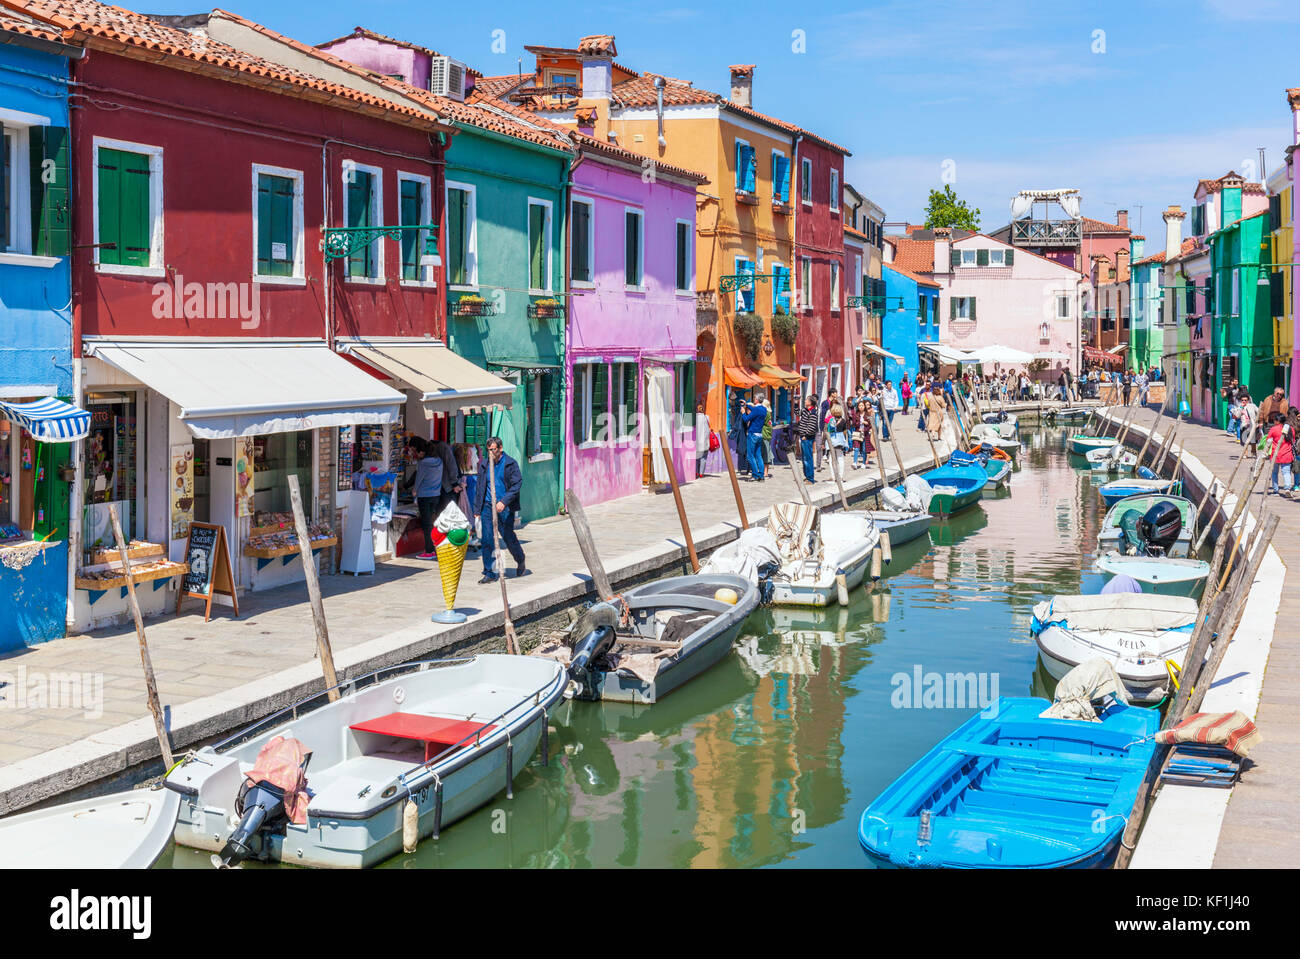 Venise ITALIE VENISE maisons peintes de couleur le long d'un canal sur l'île de Burano lagune de Venise Italie Venise l'agglomération de la ville de l'Europe de l'UE Banque D'Images